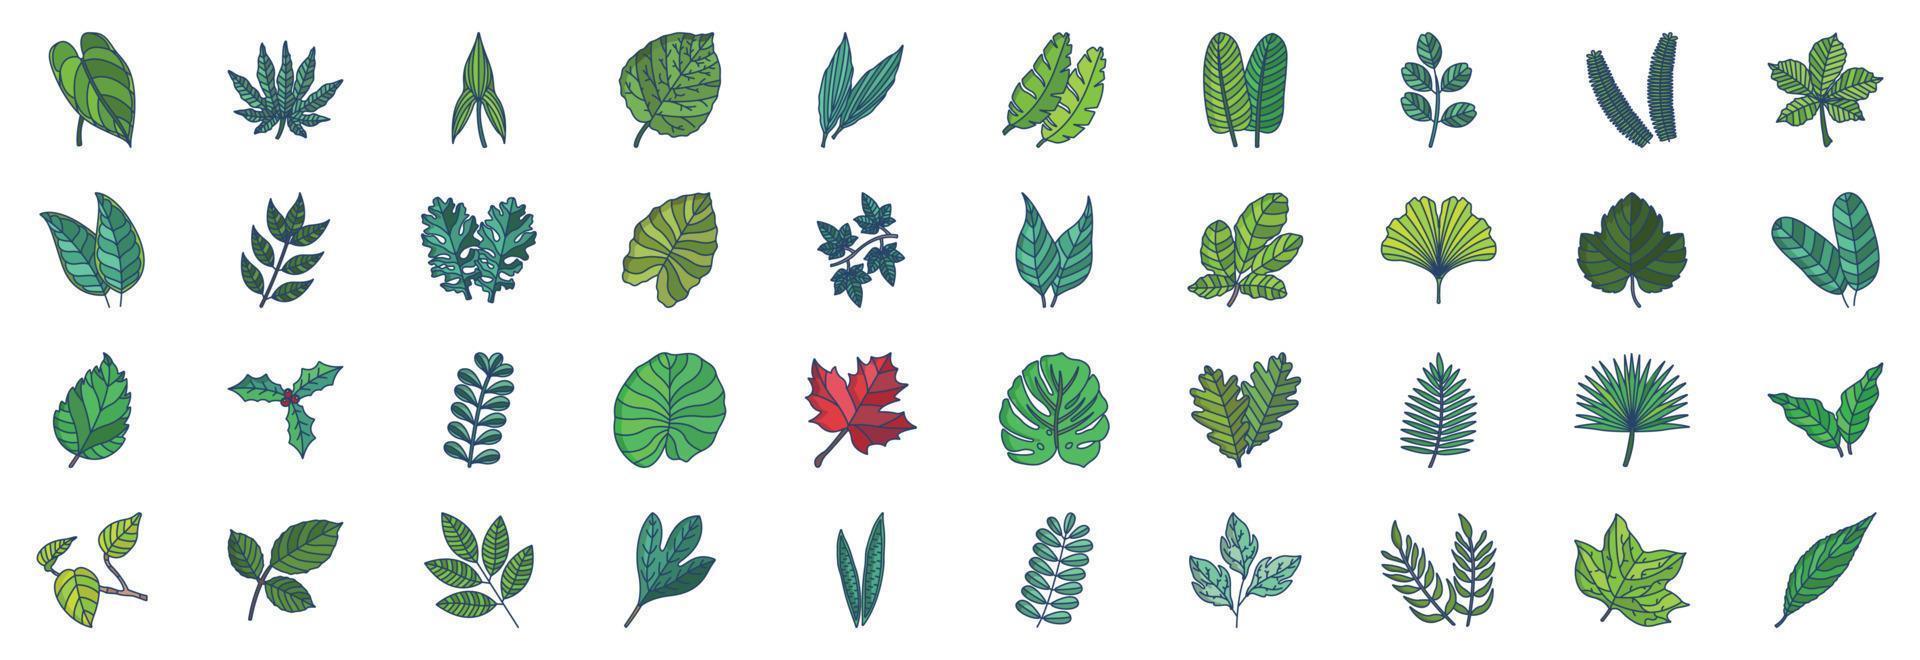 colección de íconos relacionados con las hojas, incluidos íconos como anthurium, aralia, aspidistra, castaño, cítricos y más. ilustraciones vectoriales, conjunto perfecto de píxeles vector